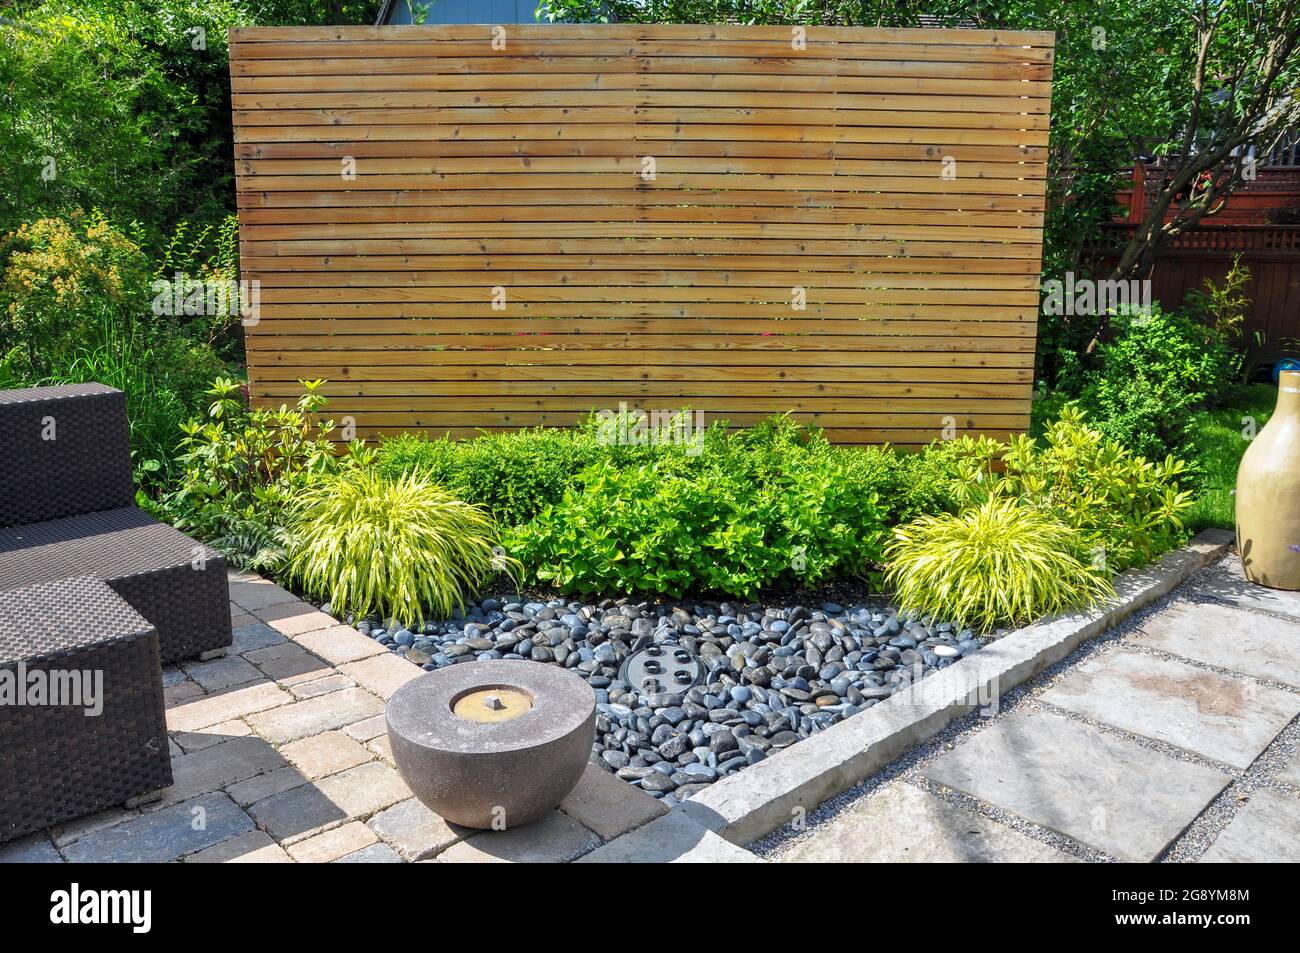 Strandkiesel, quadratische Steinplatten, tropfende Pflastersteine und einfache Pflanzungen sorgen in diesem kleinen, modernen Garten im Hinterhof für Textur und Kontrast. Stockfoto